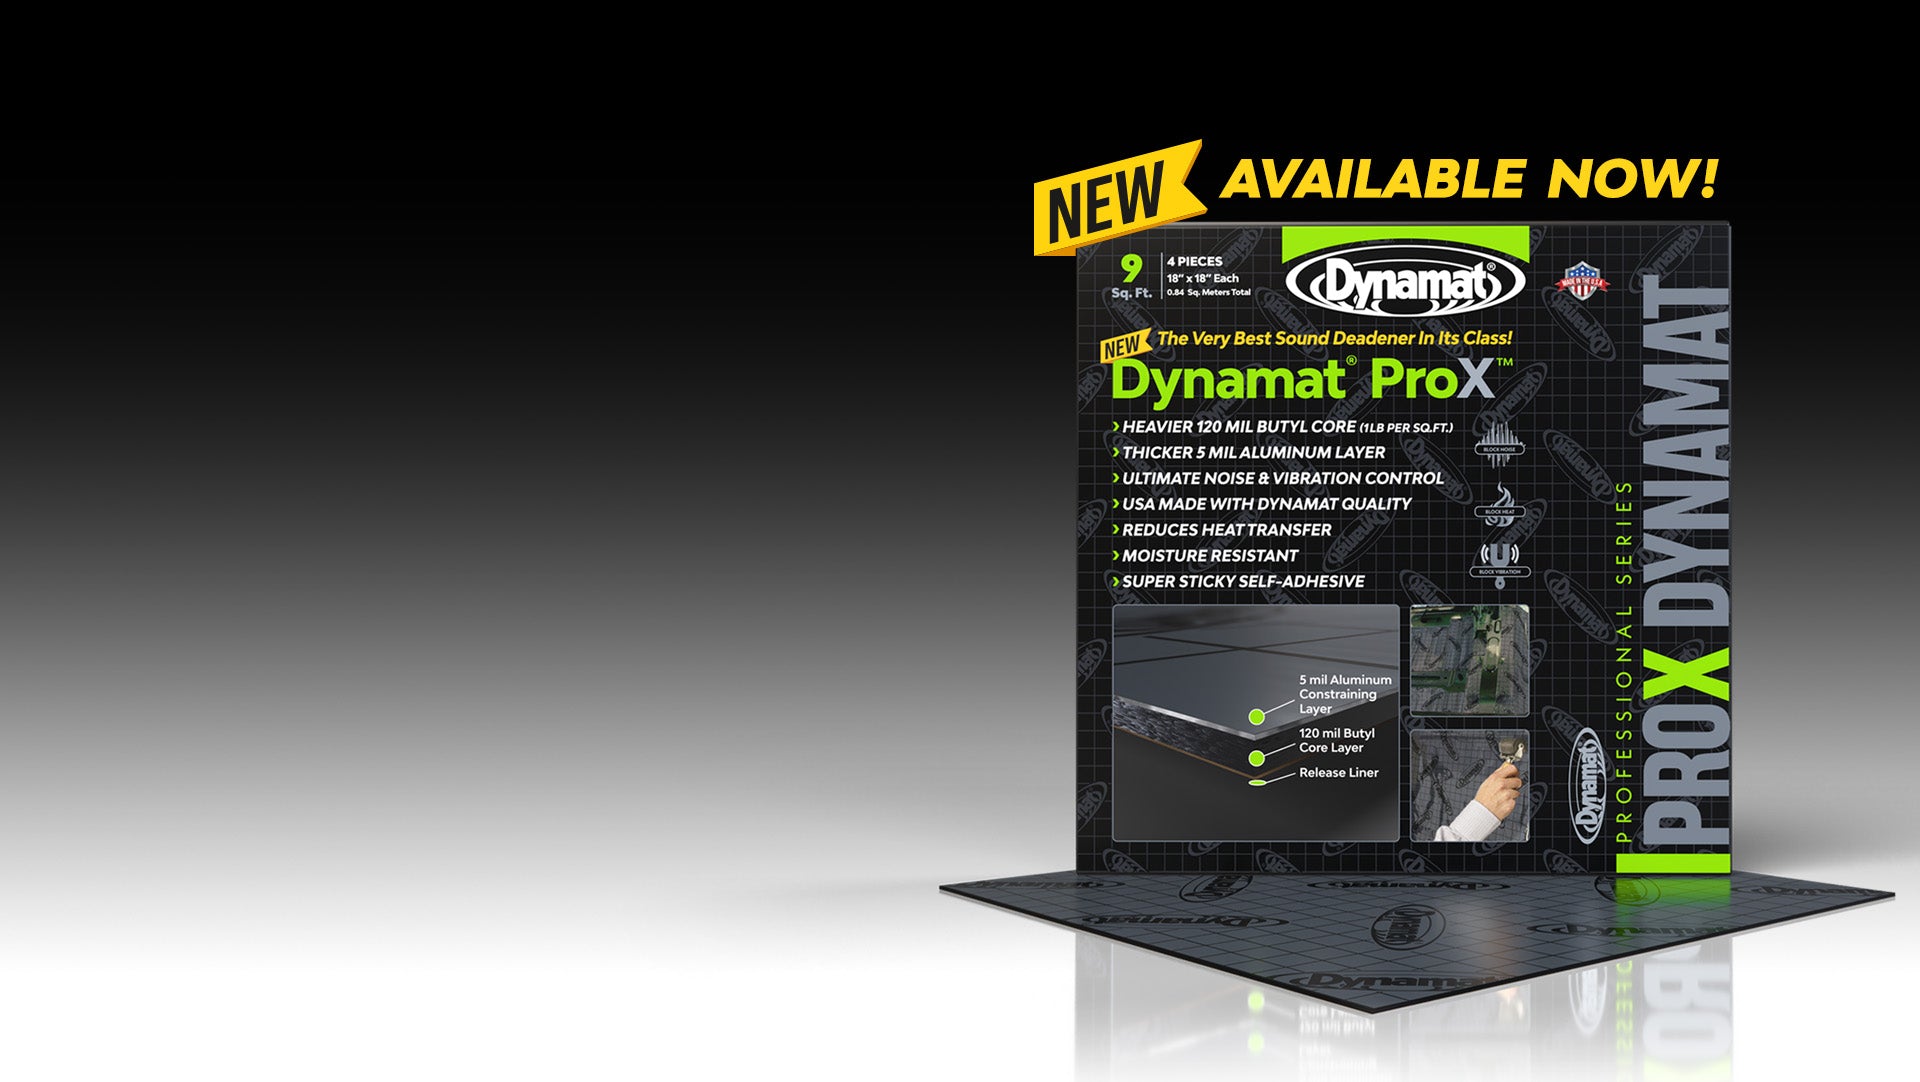 Dynamat Online Store – DynamatStore